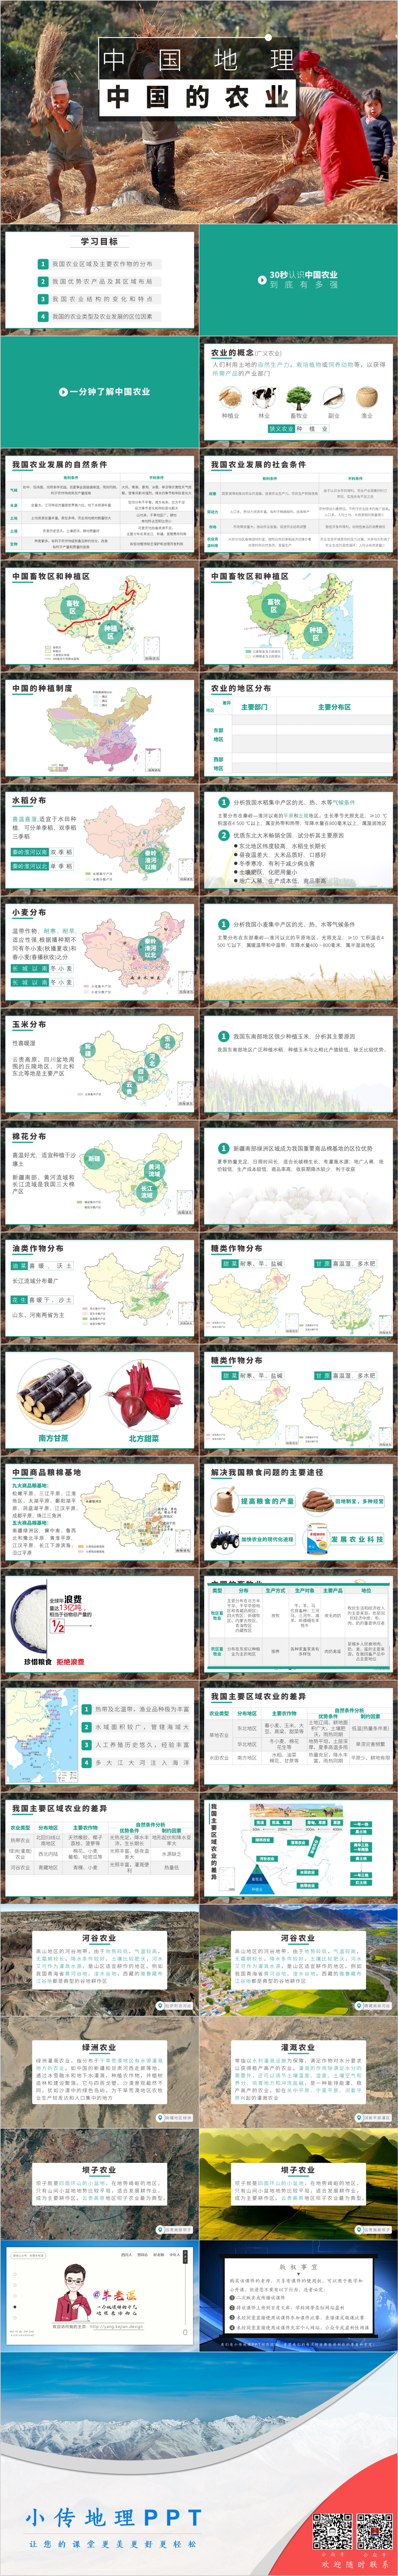 中国的农1业.jpg